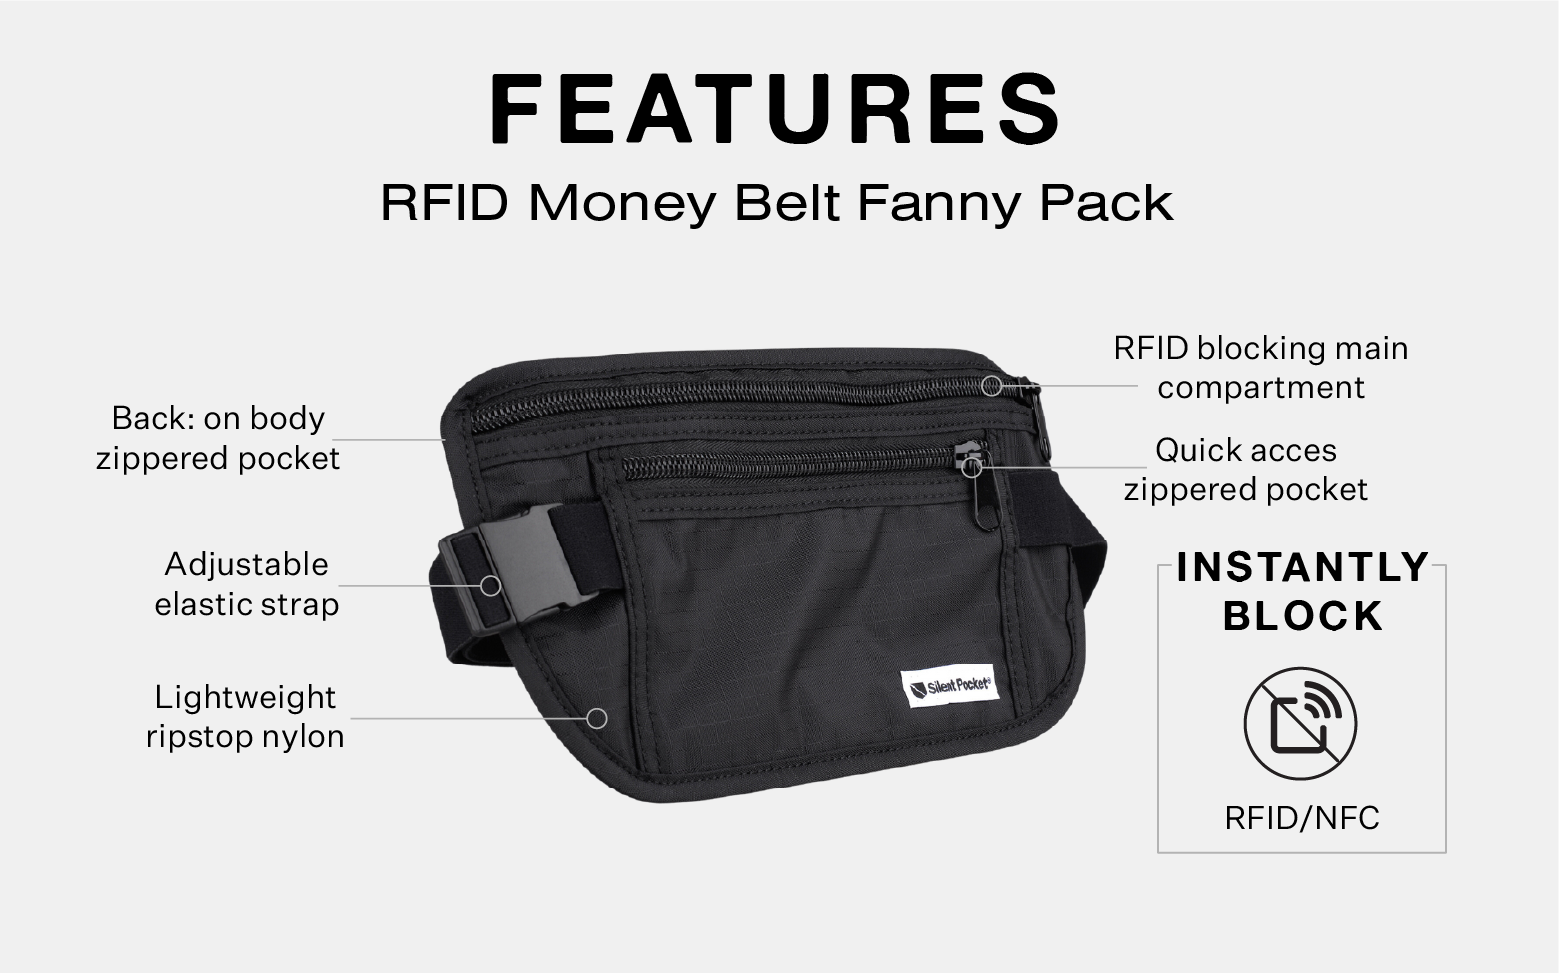 Leather Utility 4 Pocket Belt | vintage style messenger bag, festival belt,  travel belt, fanny pack, waist pack, vendor bag